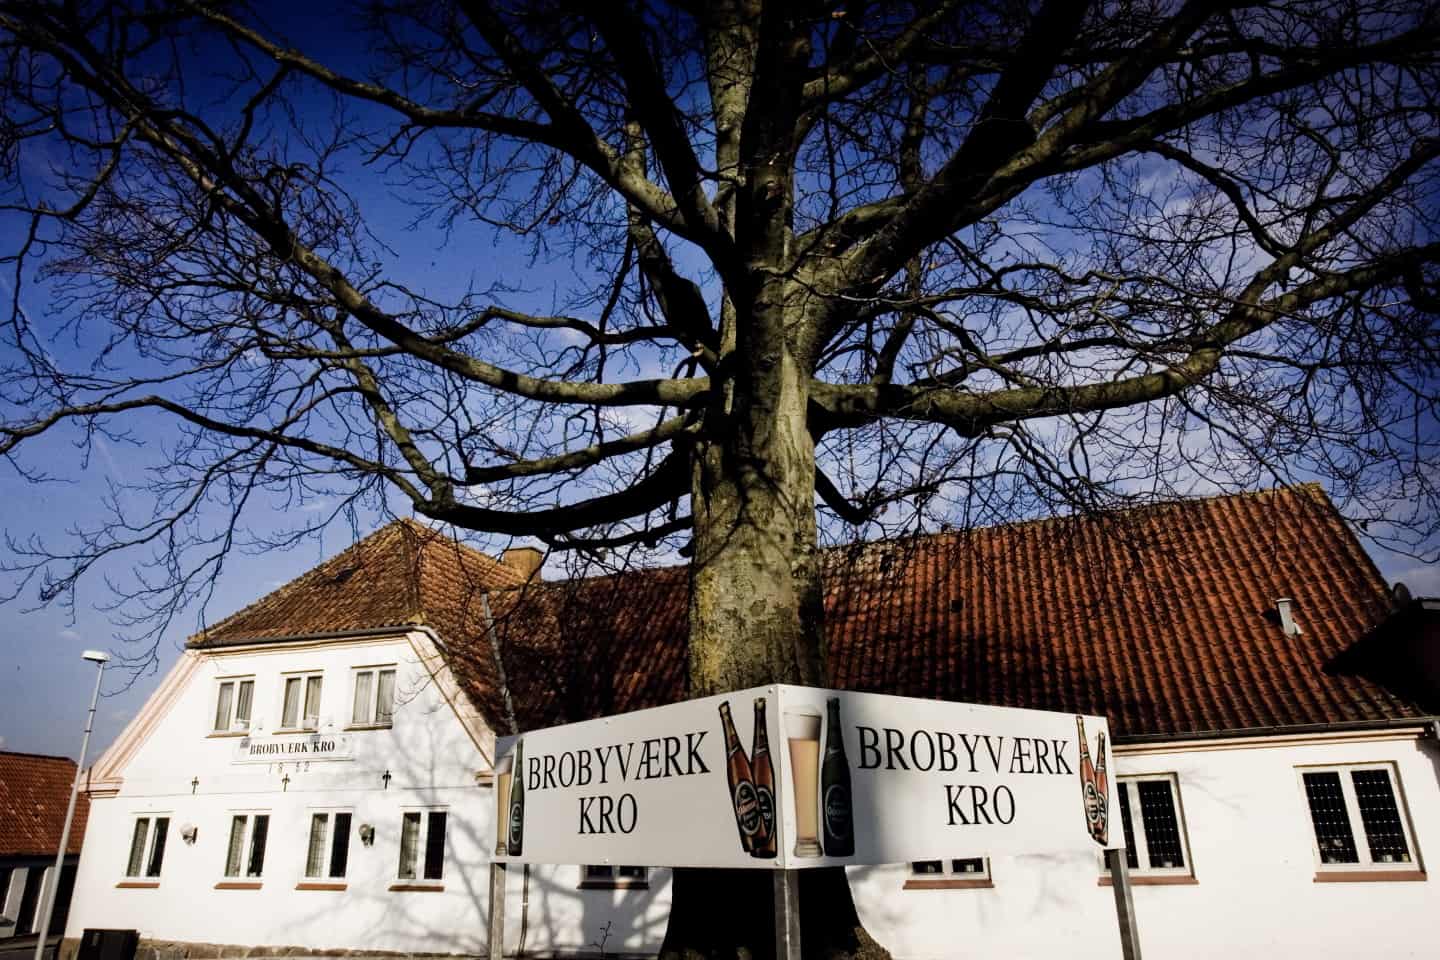 Installation genvinde Universitet Lokaldebat: Tillykke med salget af Brobyværk Kro | faa.dk